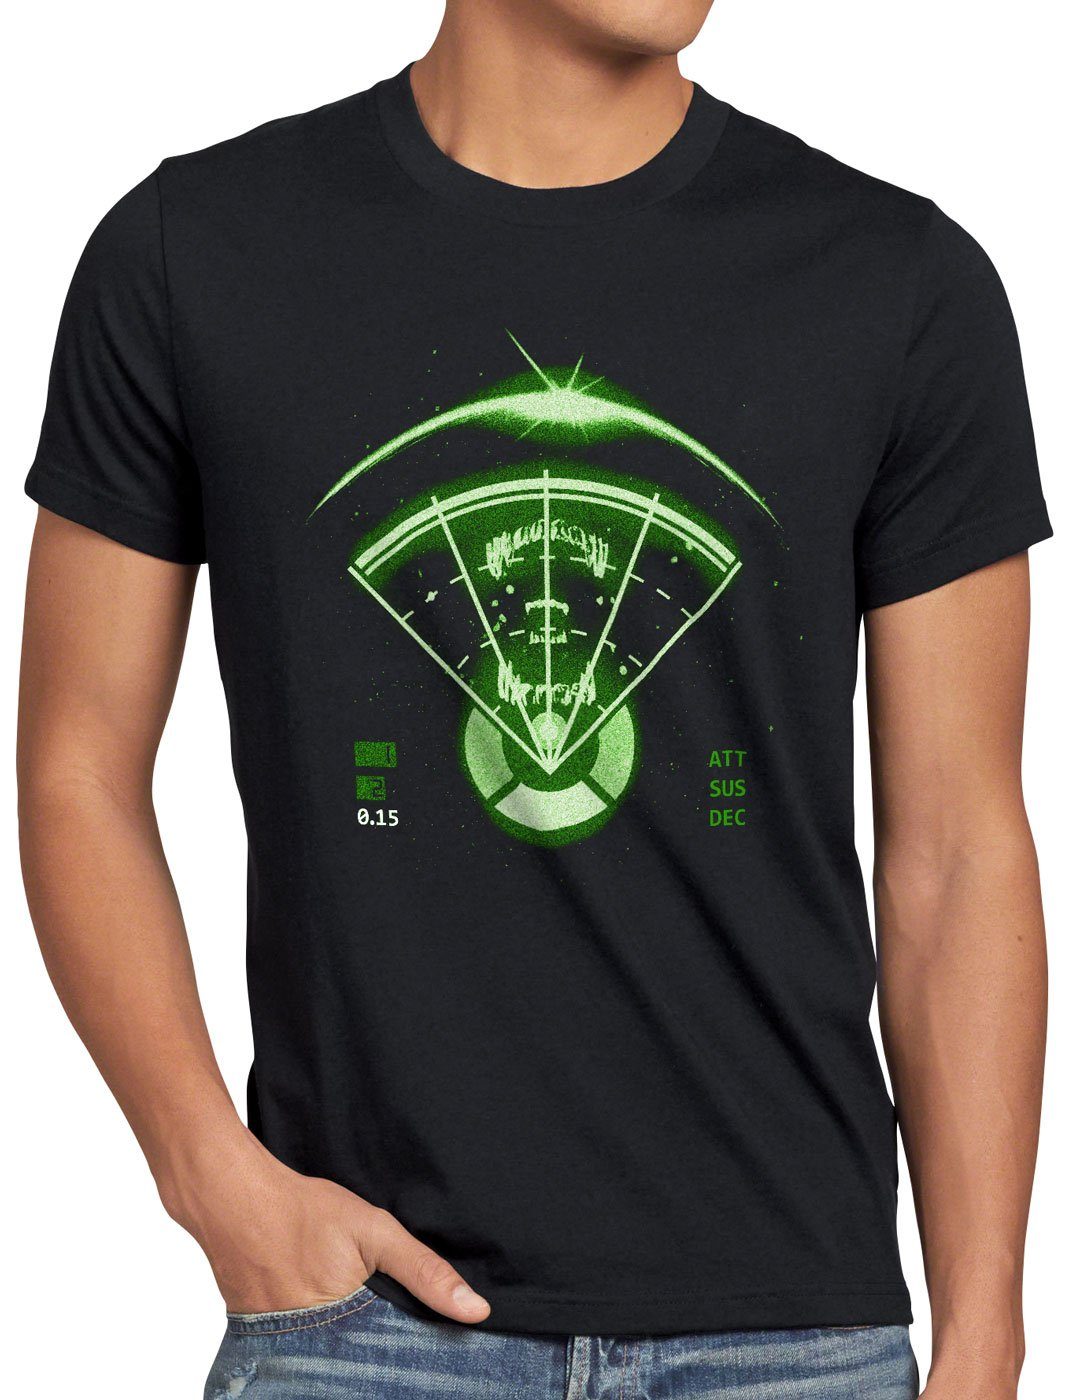 geringster Preis style3 Print-Shirt Alien ripley Herren T-Shirt Radar xenomorph